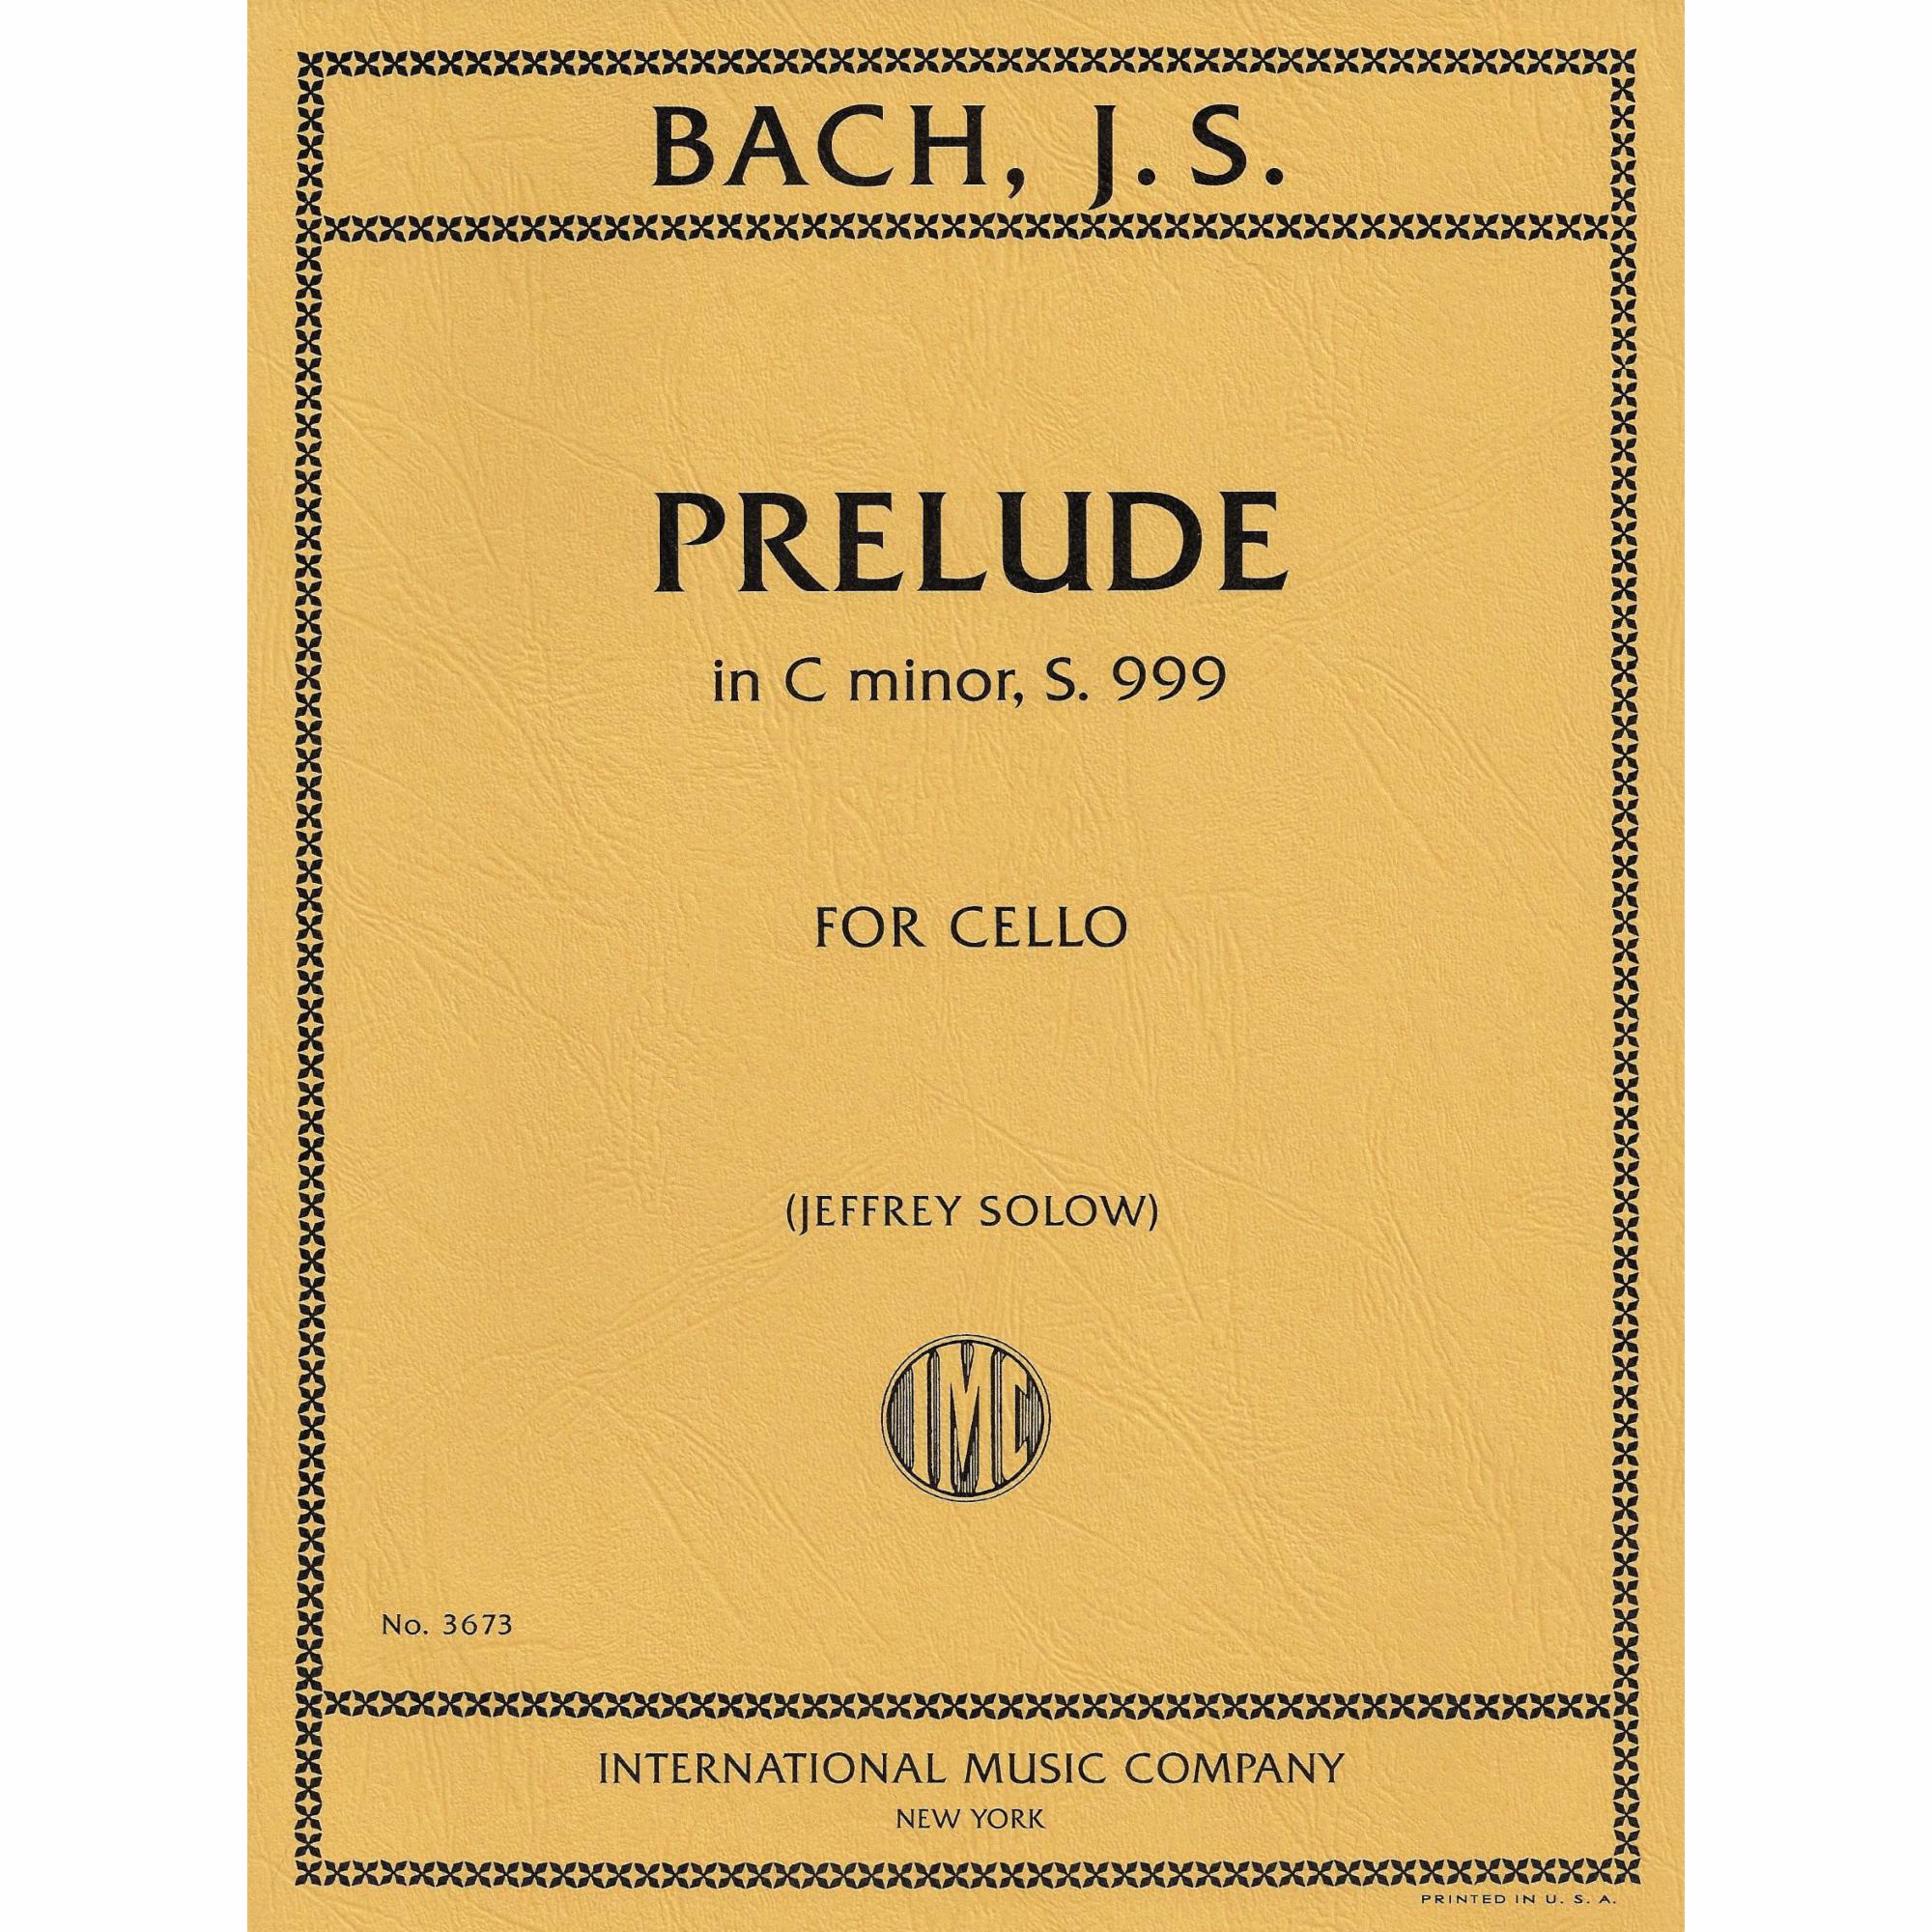 Bach -- Prelude in C minor, S. 999 for Cello